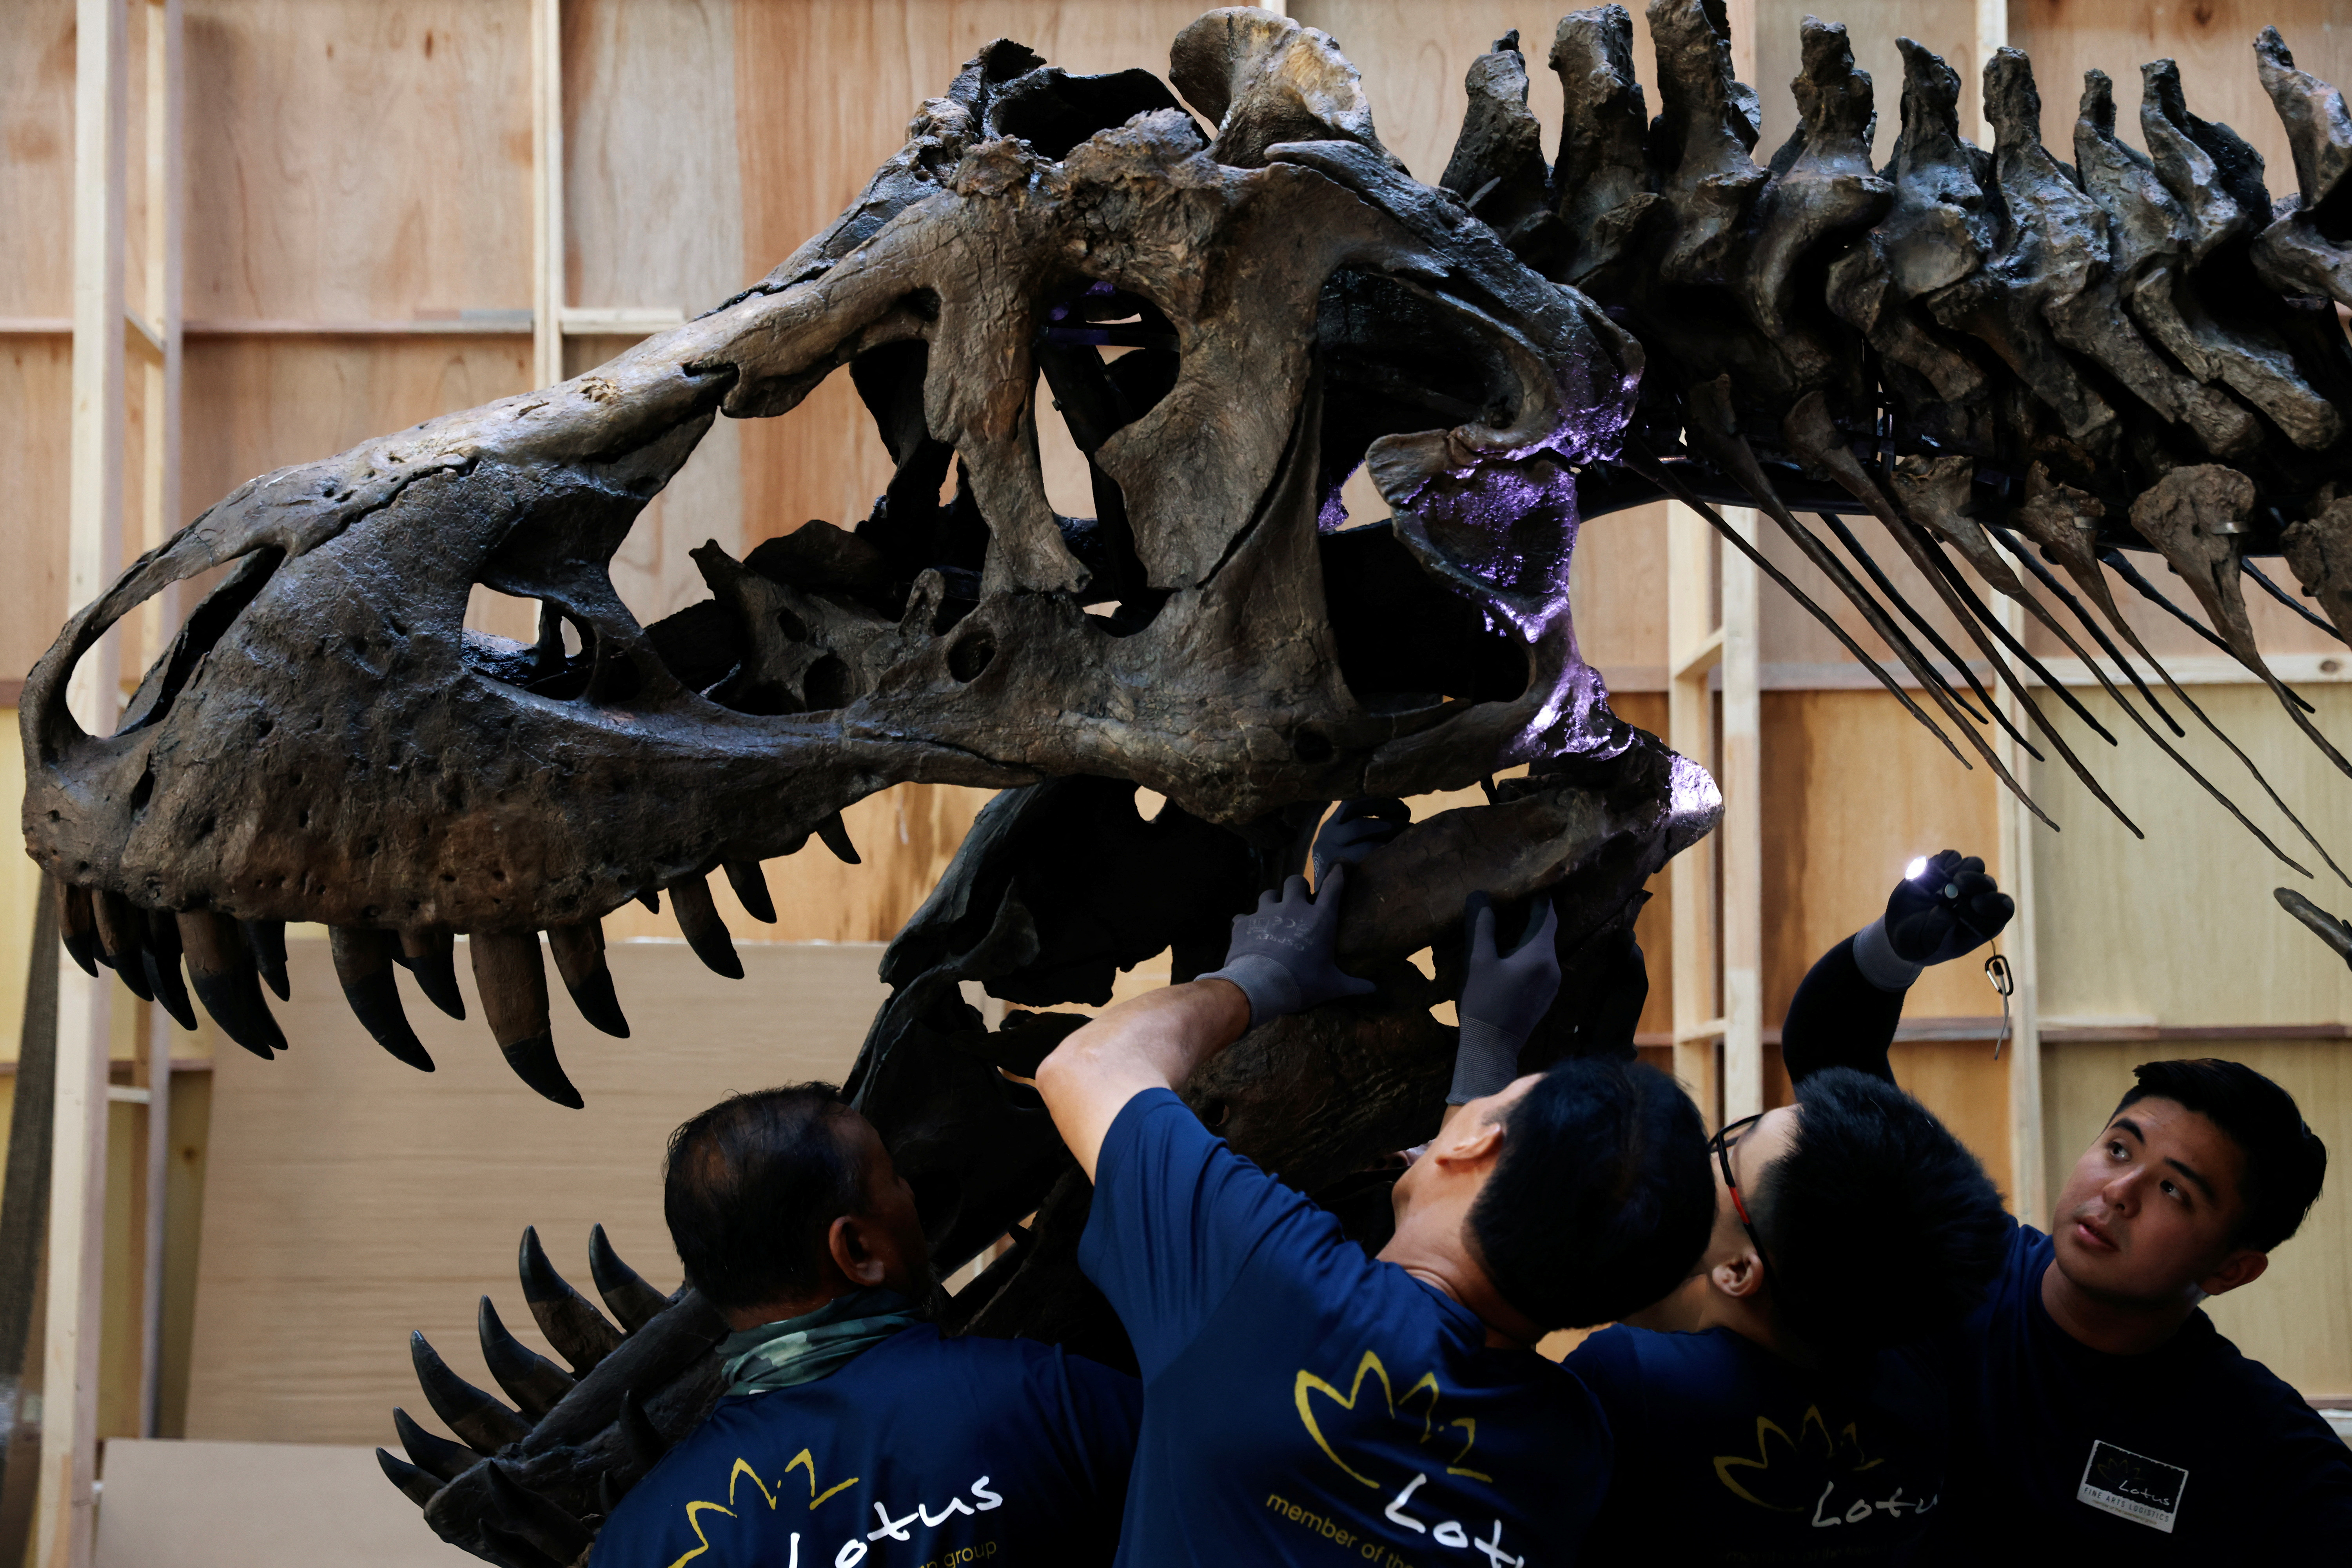 El dinosaurio del Cretácico Tyrannosaurus rex tiene una fuerza de mordedura estimada en 35.000 newtons (REUTERS)